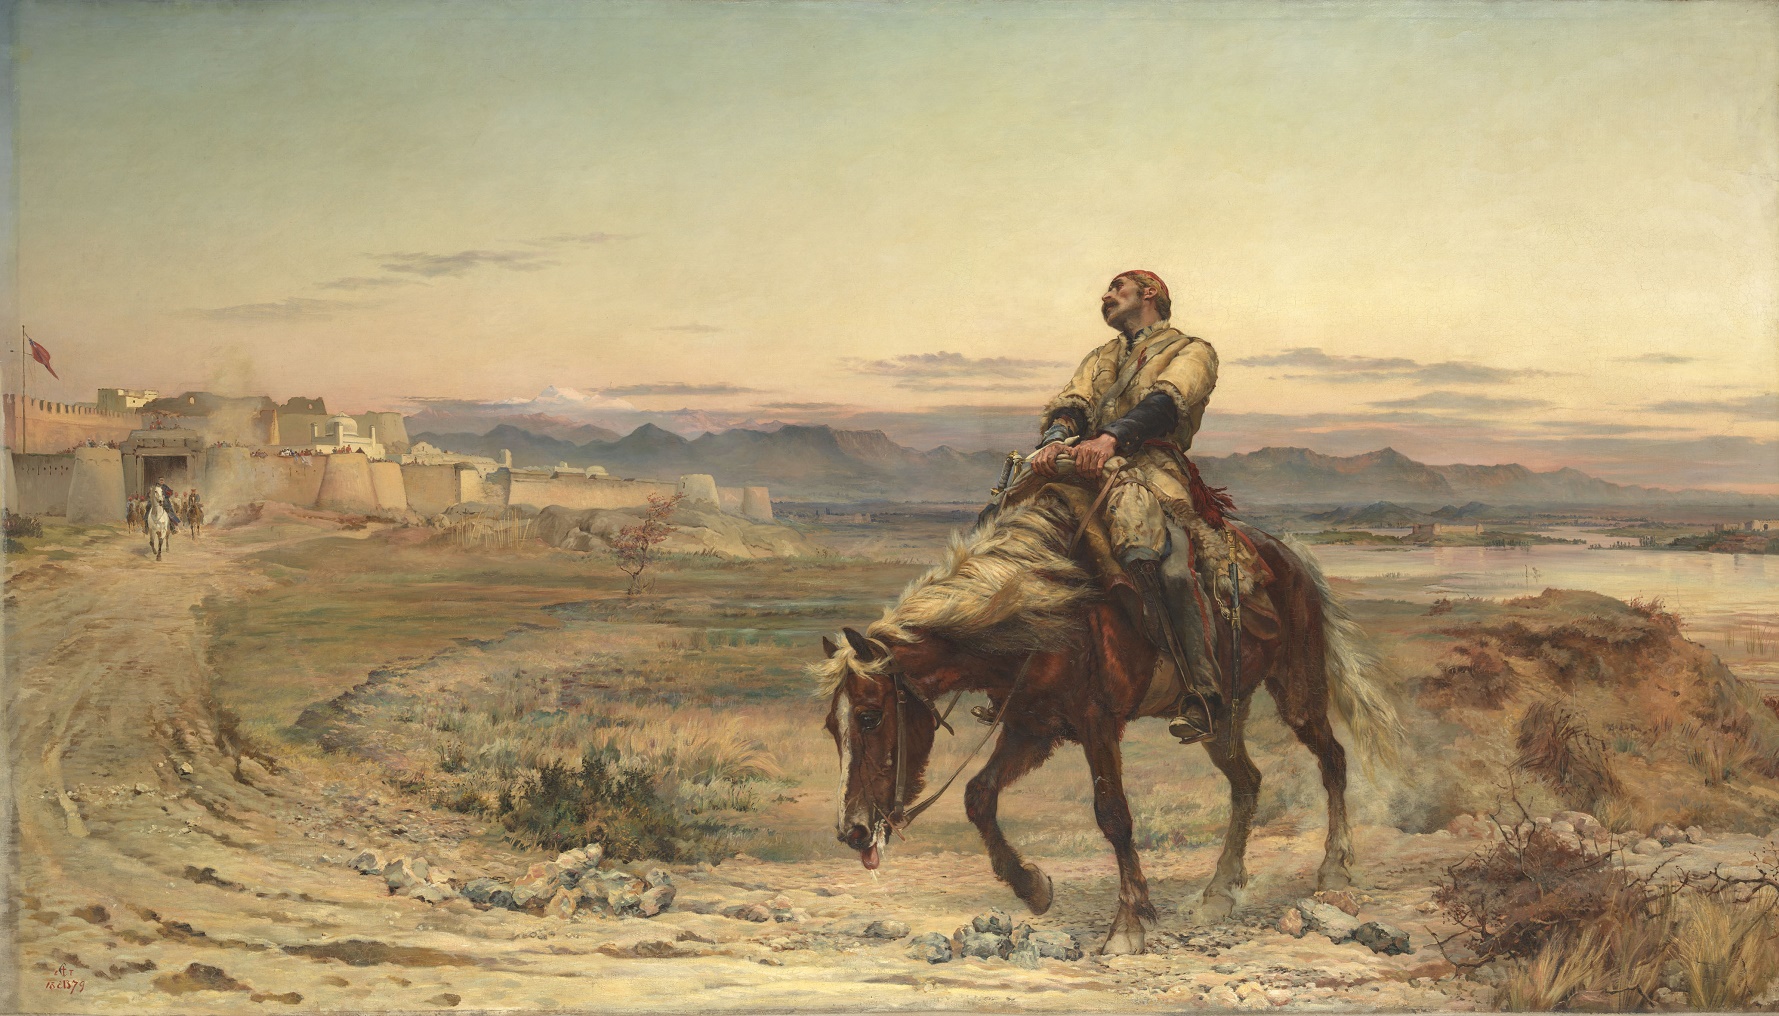 Uma das principais telas em exposição, pintada por Elizabeth Butler, em 1842, retrata o único sobrevivente de um massacre ocorrido no Afeganistão no século 19